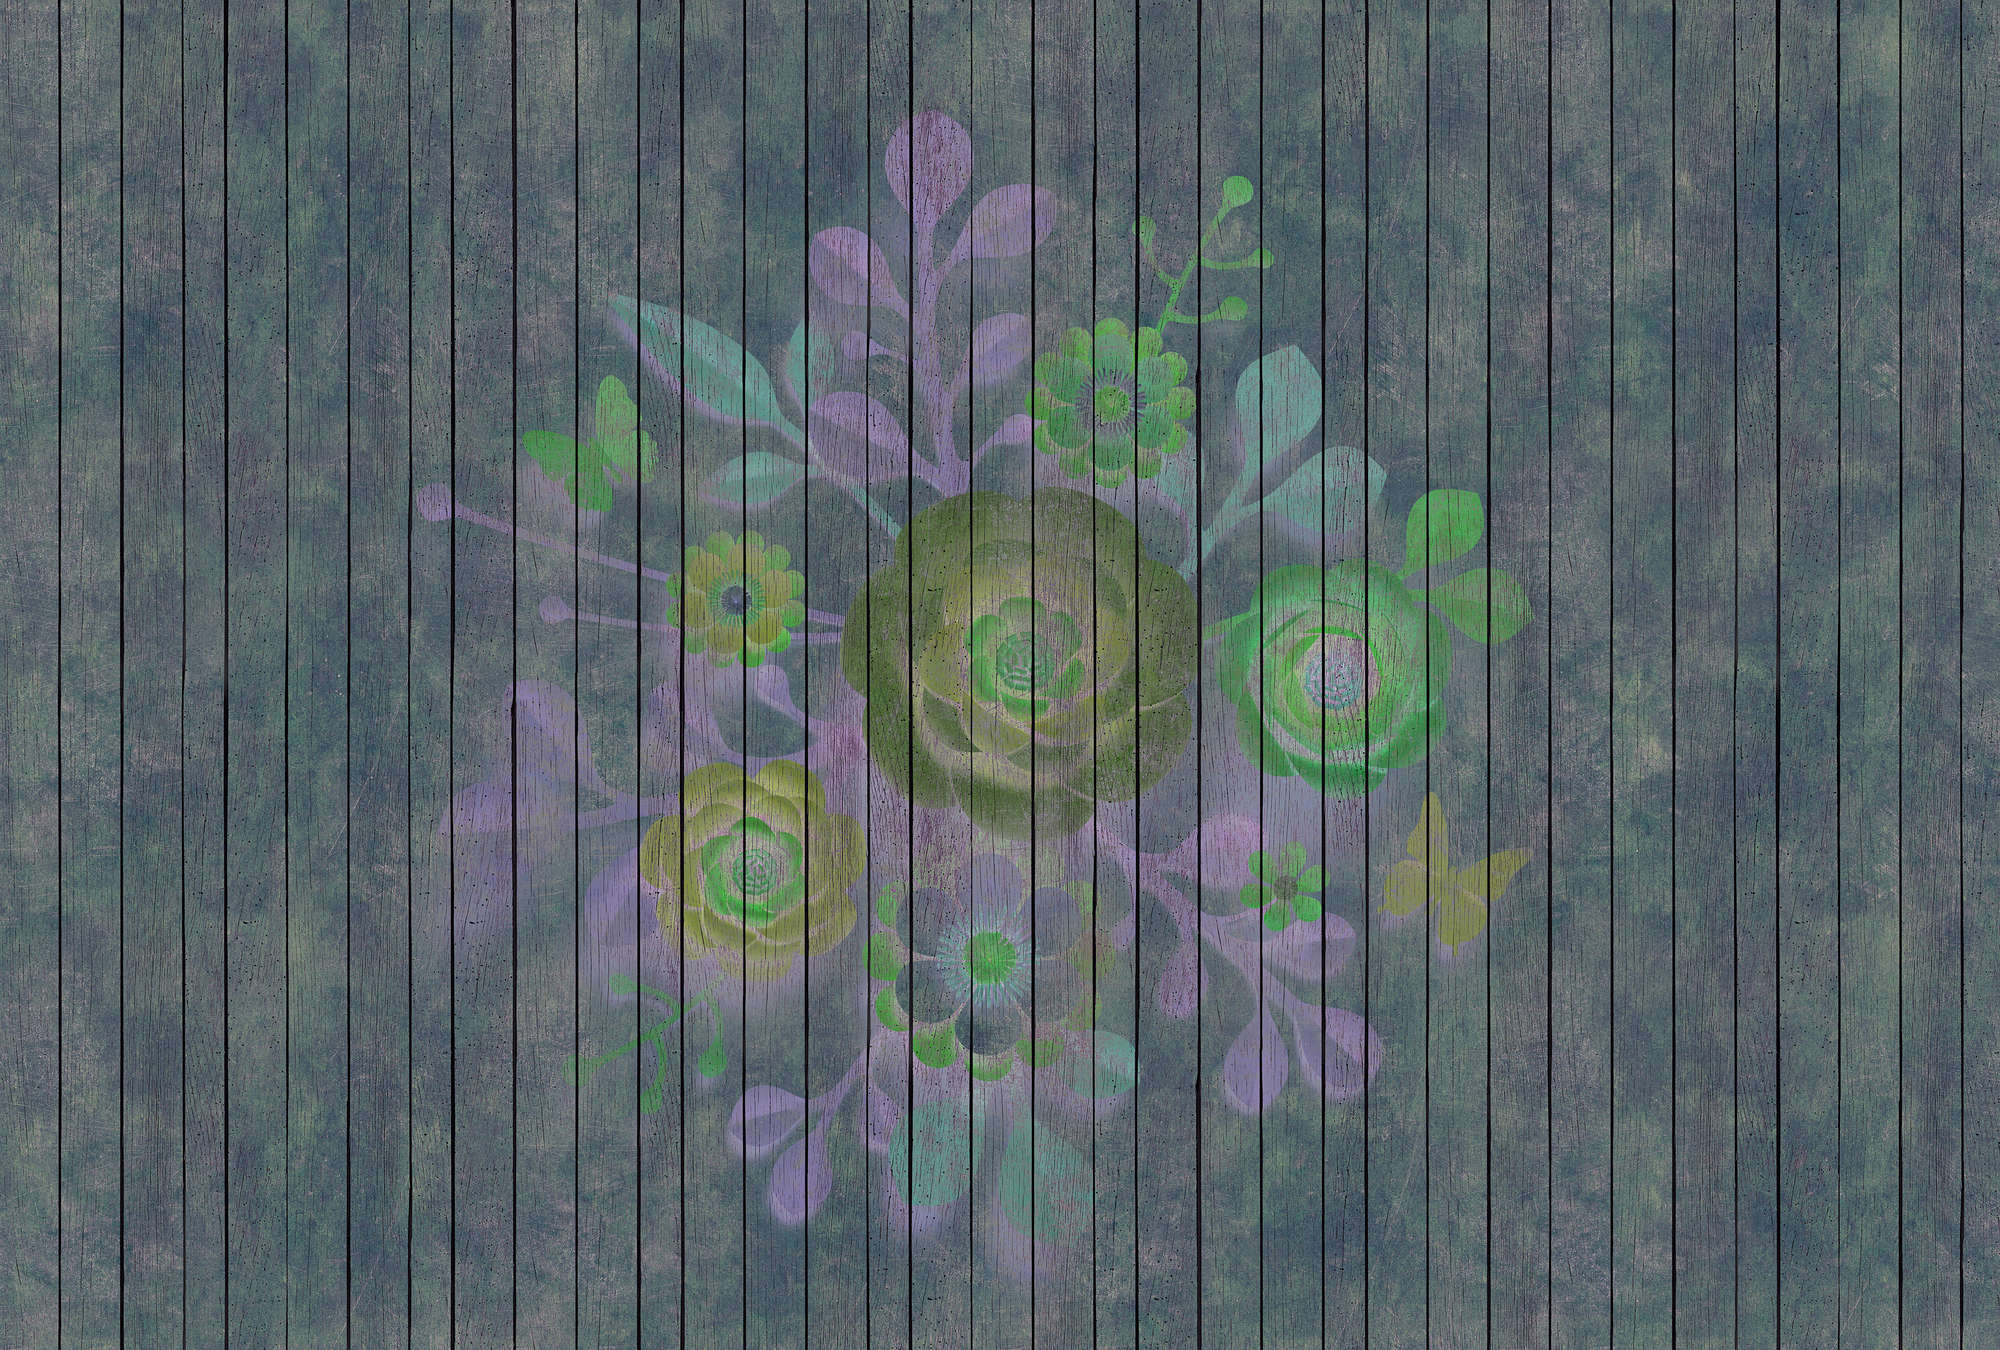             Spray Bouquet 2 - Fototapete in Holzpaneele Struktur mit Blumen auf Bretterwand – Blau, Grün | Perlmutt Glattvlies
        